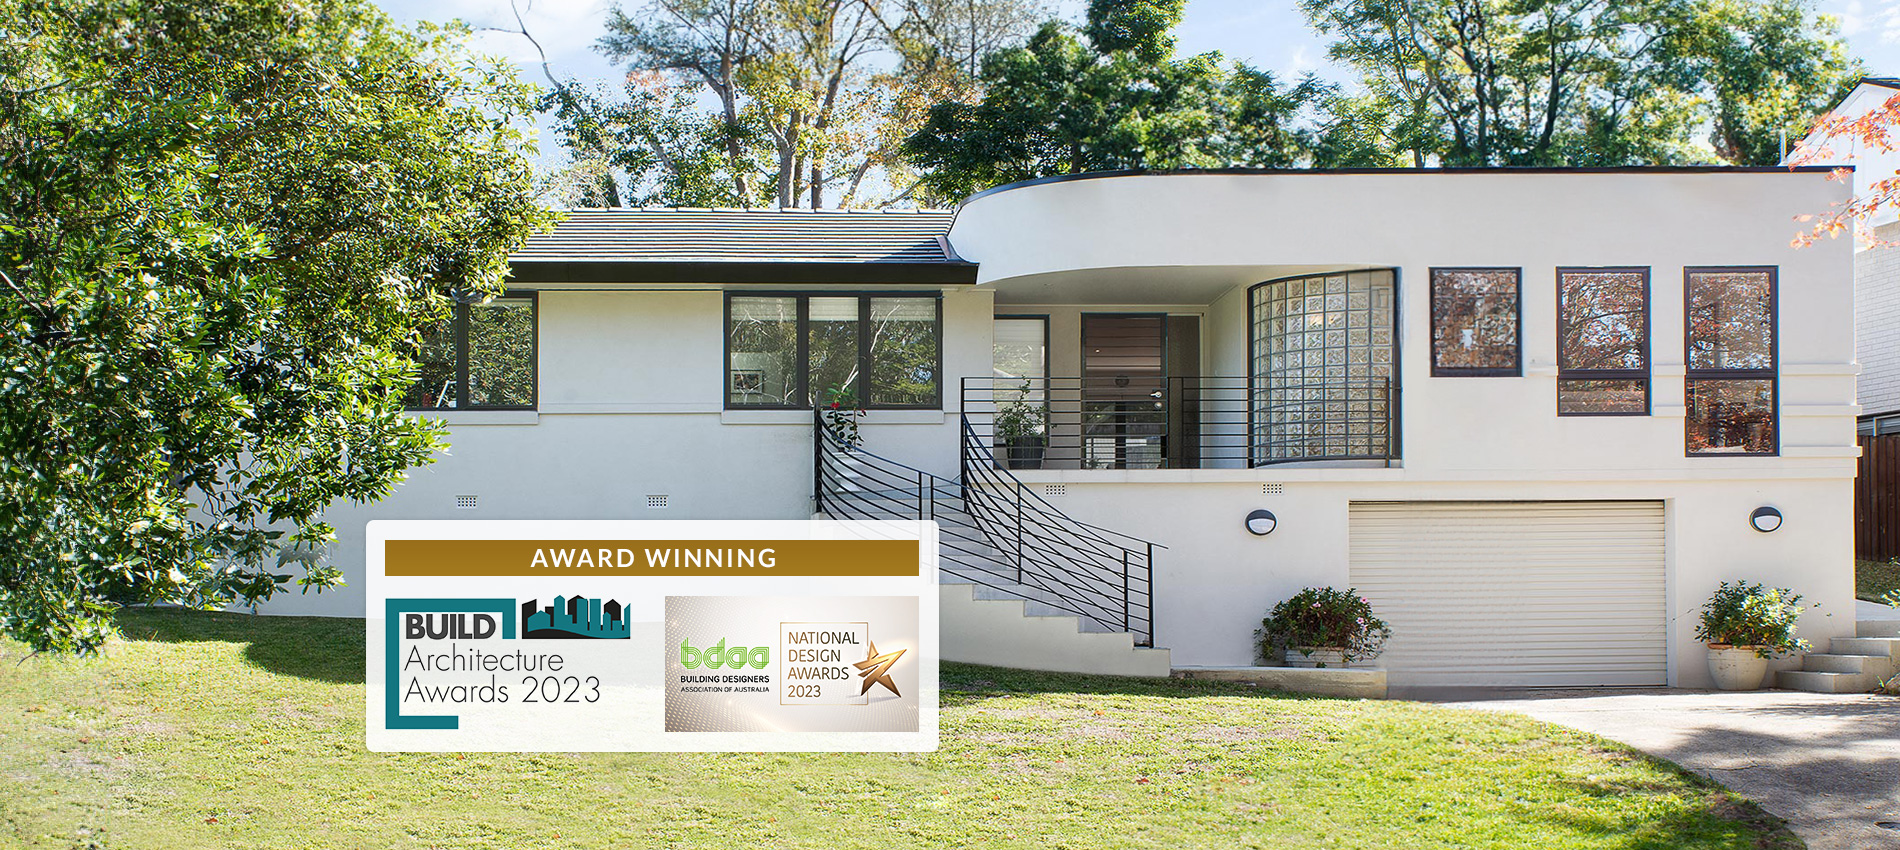 BAA BDAA Award Winning Home Design and Renovation Sydney